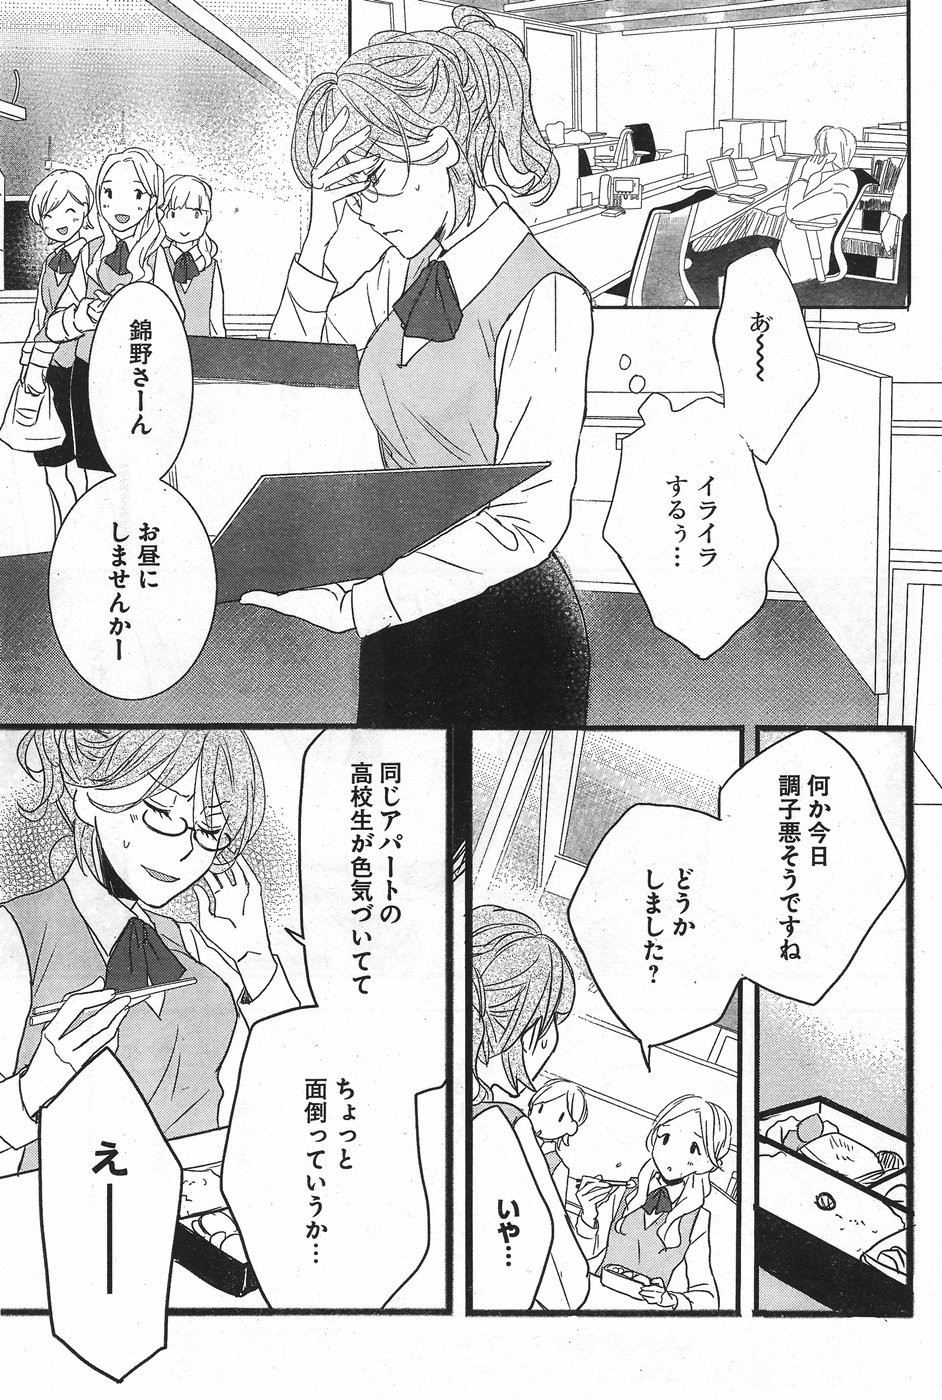 Bokura wa Minna Kawaisou - Chapter 71 - Page 7